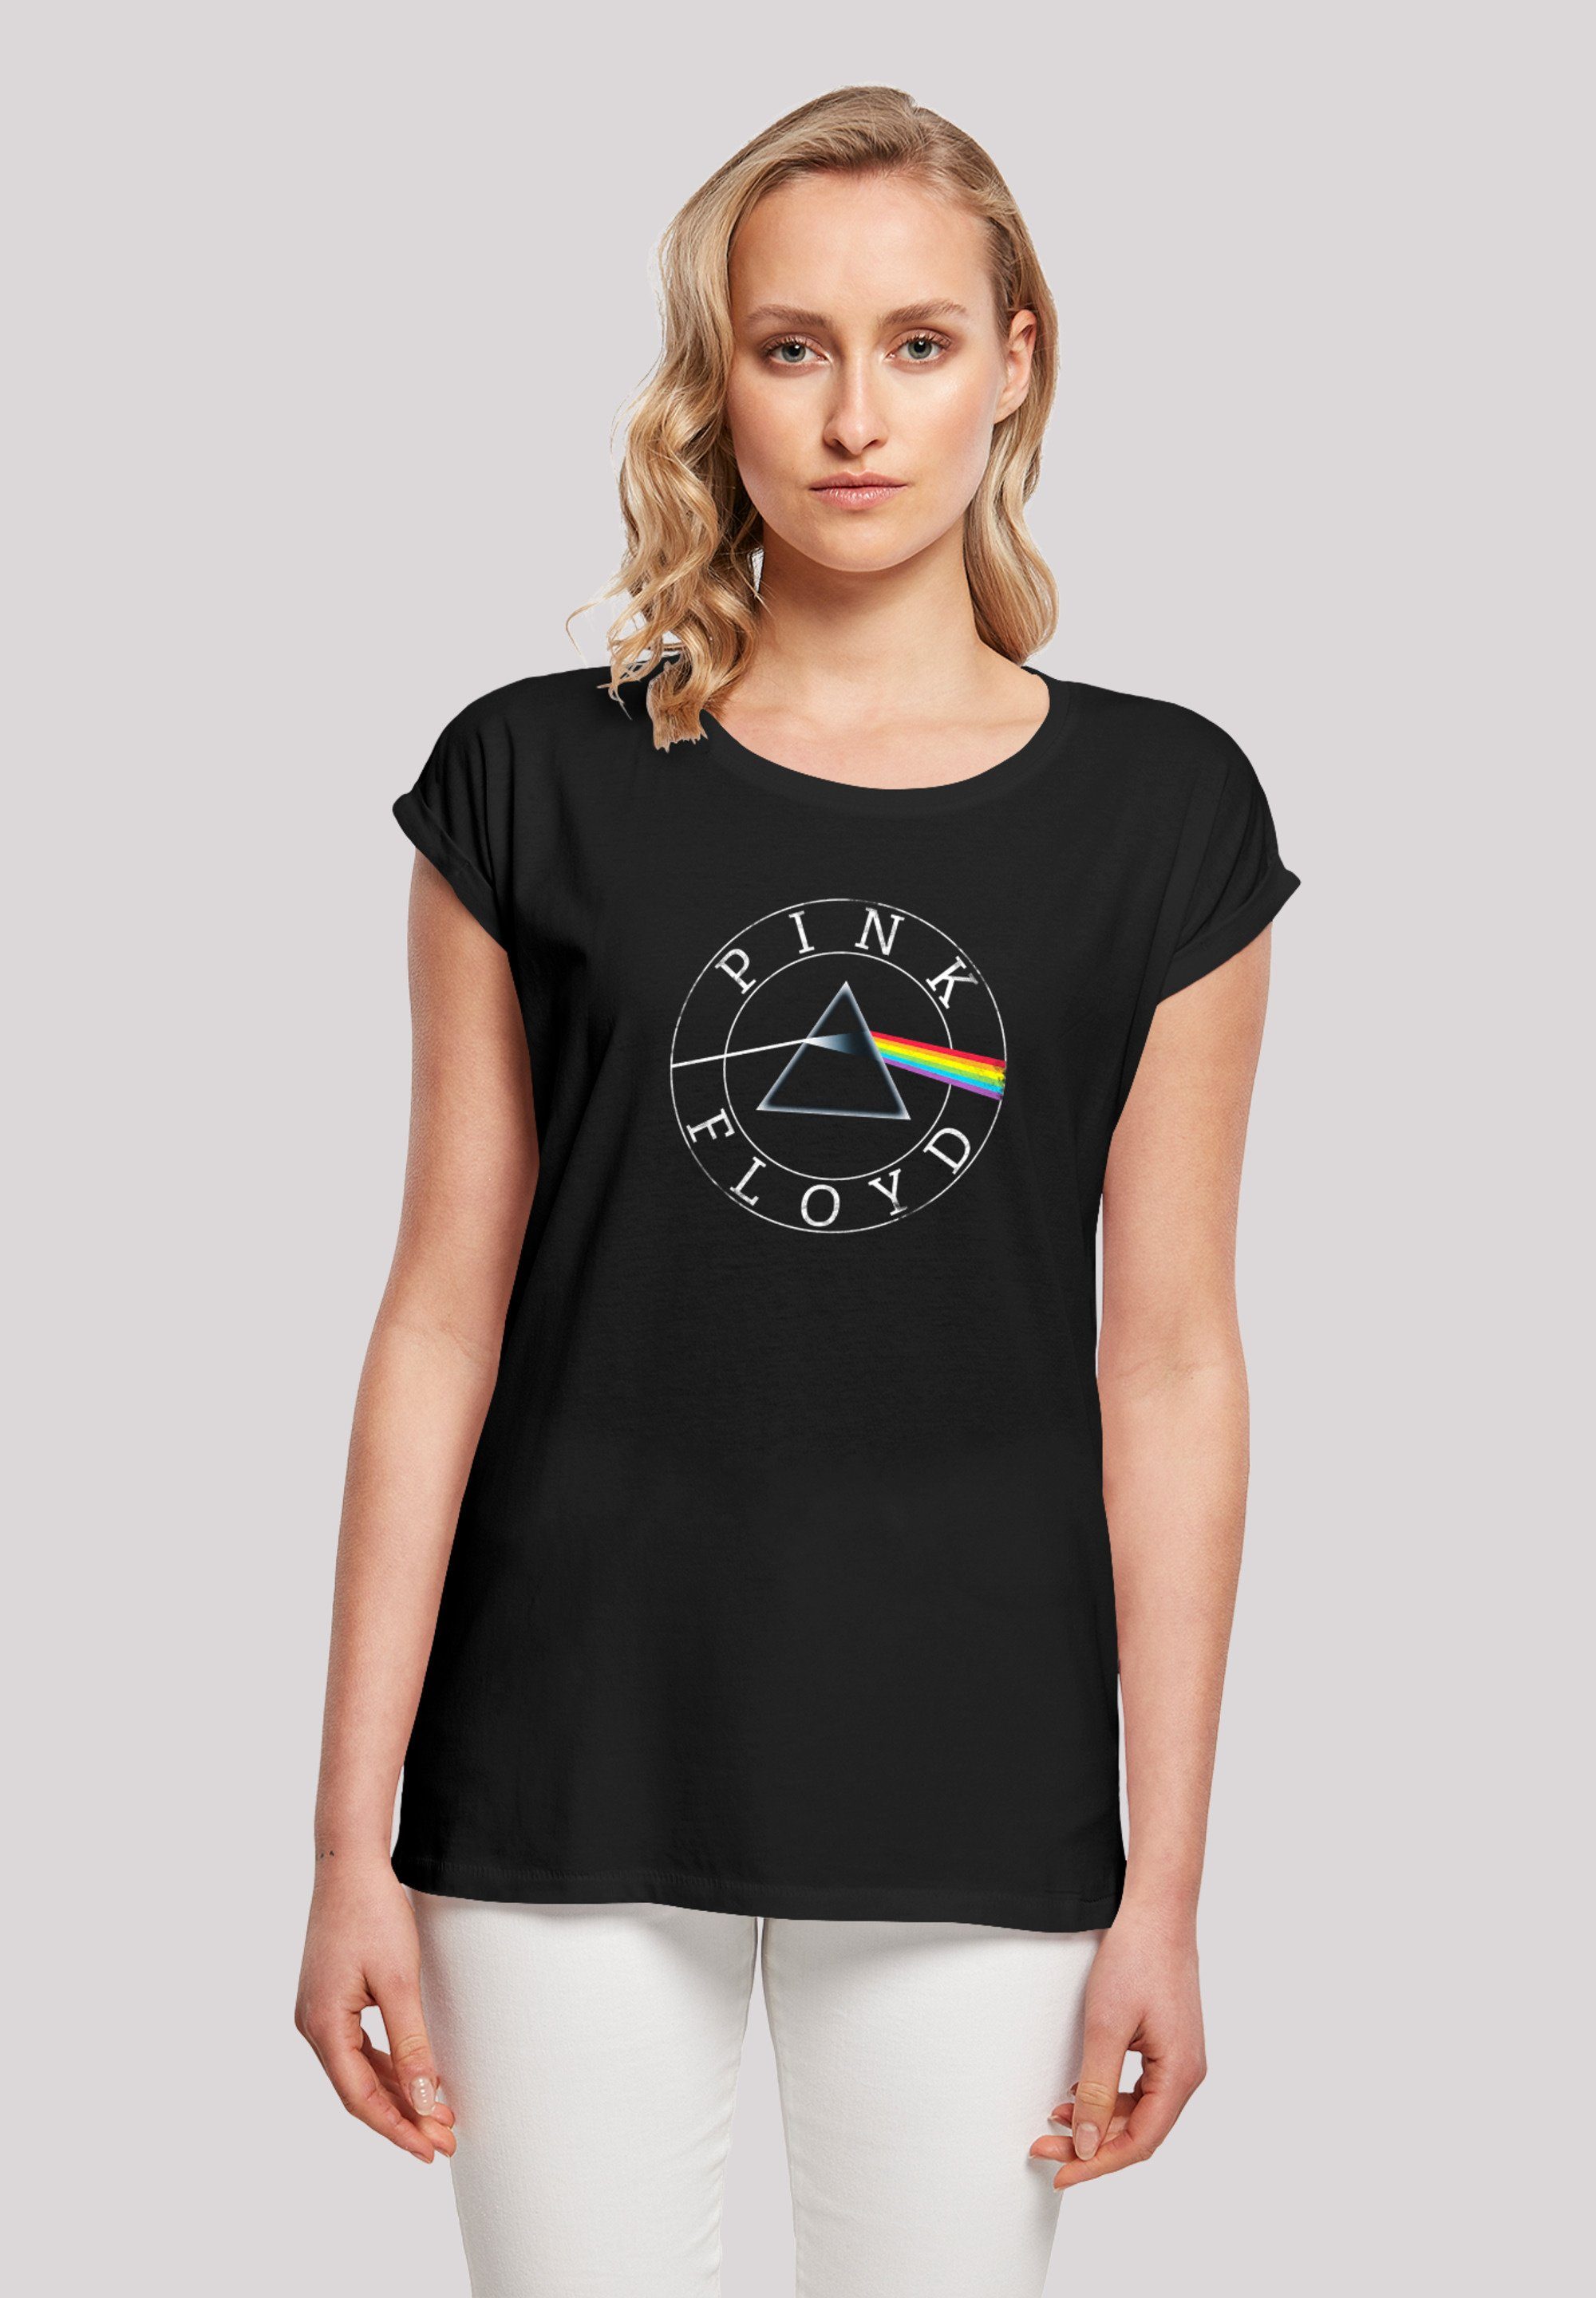 Damen Shirts F4NT4STIC T-Shirt Pink Floyd Vintage Prism Logo Band Shirt Rock Musik